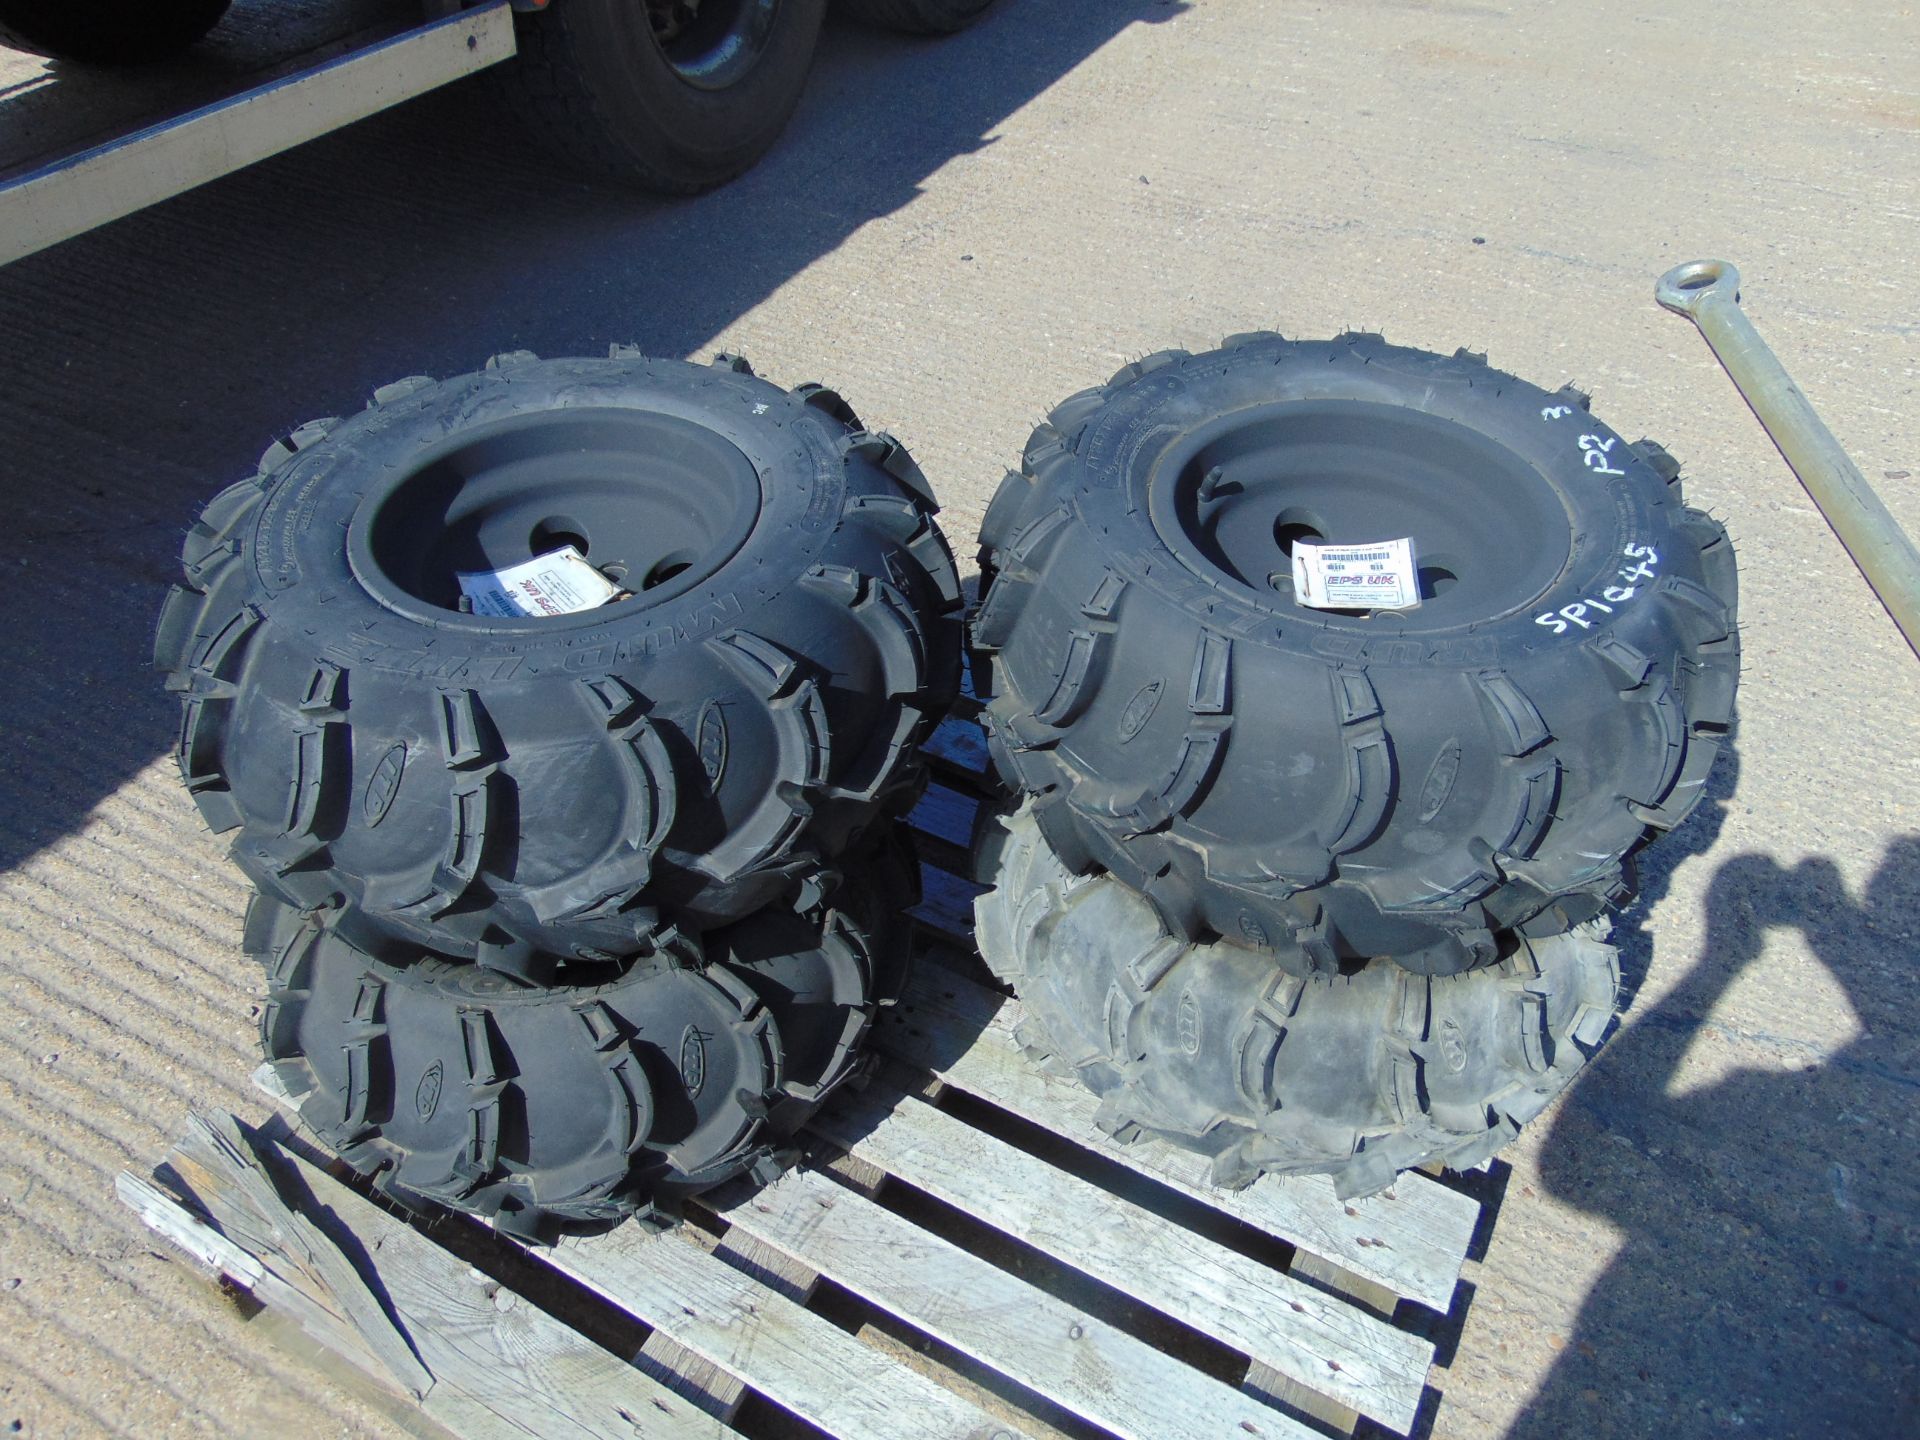 4 x ITP Mud Lite AT26x12-12 ATV/Quad Tyres with Rims